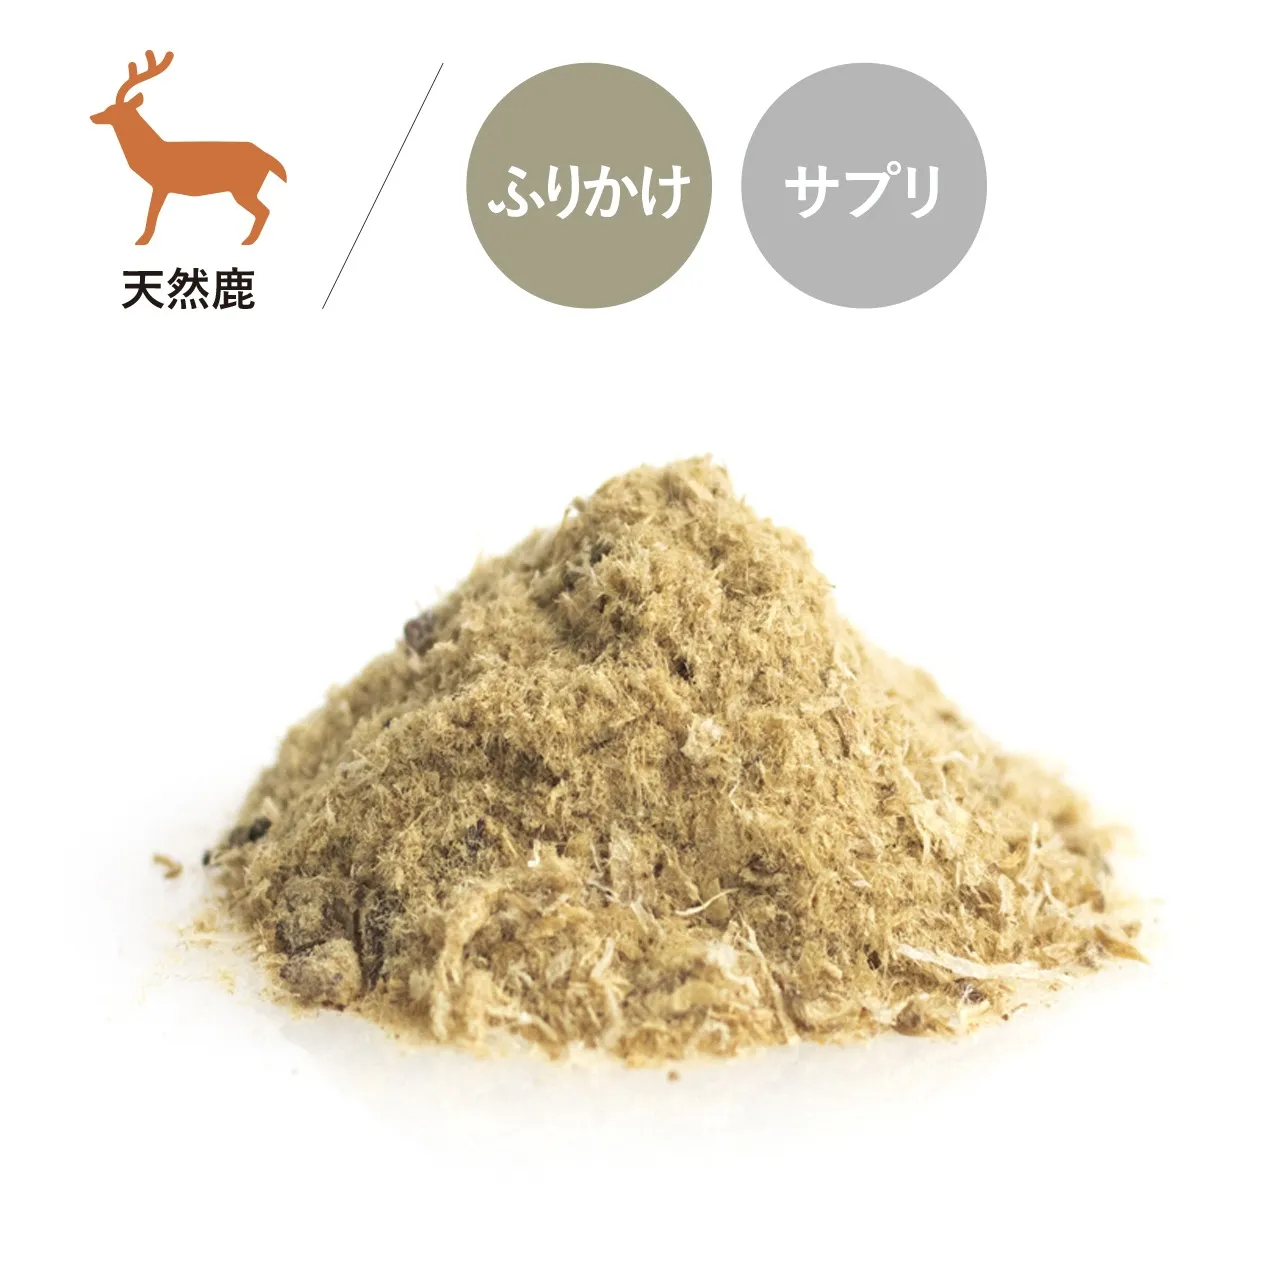 #16 天然鹿プラセンタサプリメント ¥2,200